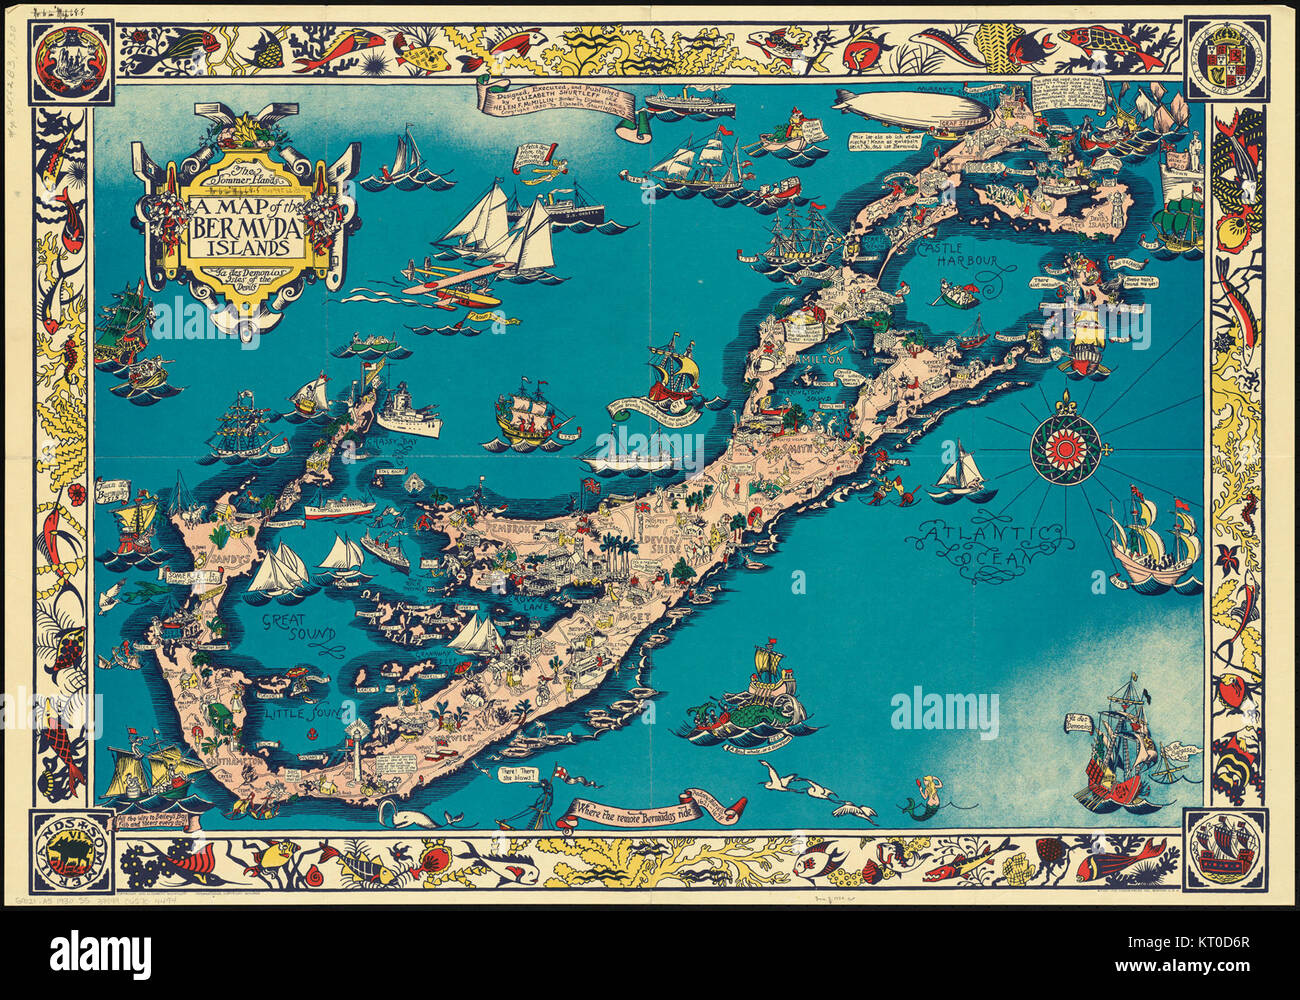 Eine Karte der Bermuda Inseln - ya des demonios, Inseln der Teufel (20547080228) Stockfoto